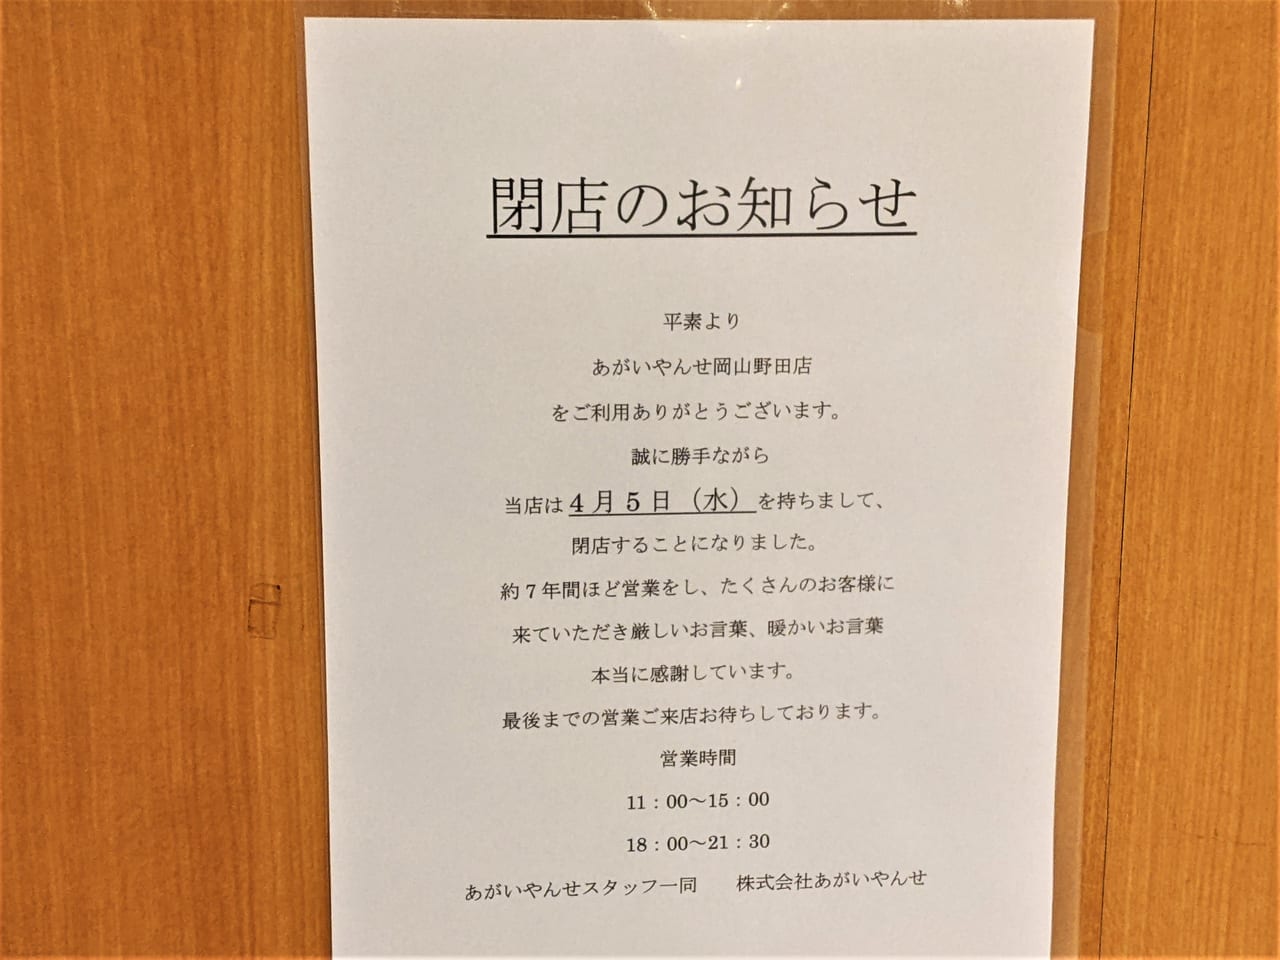 「あがいやんせ 岡山野田店」の閉店のお知らせ